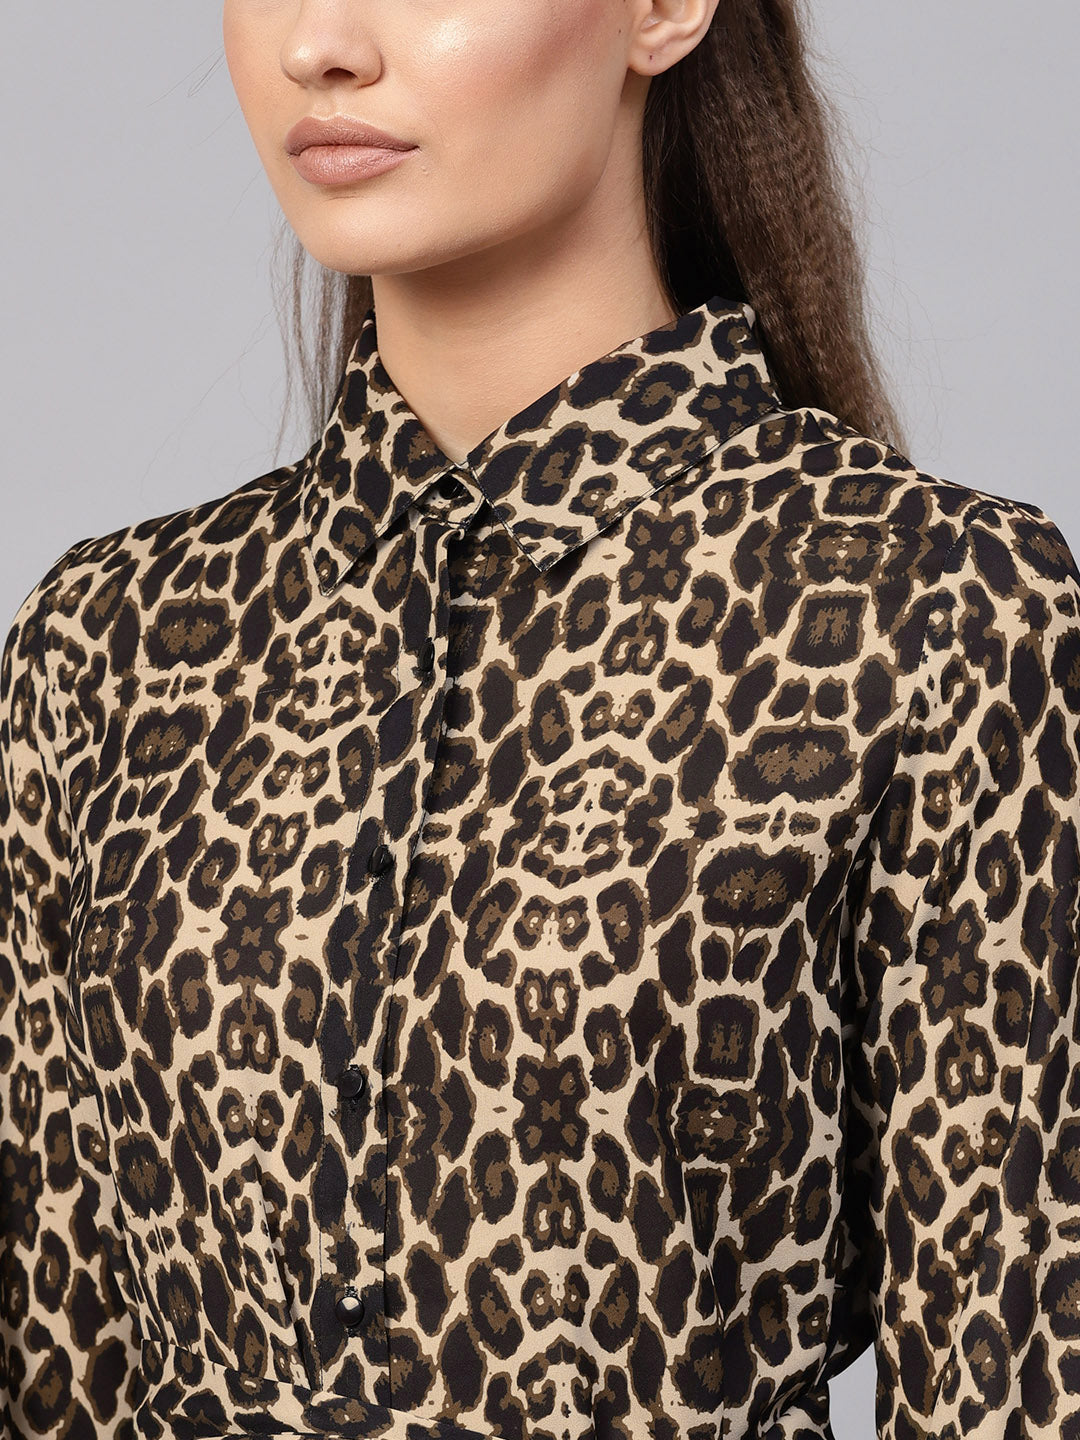 Black Cheetah Front Open Shirt Dress